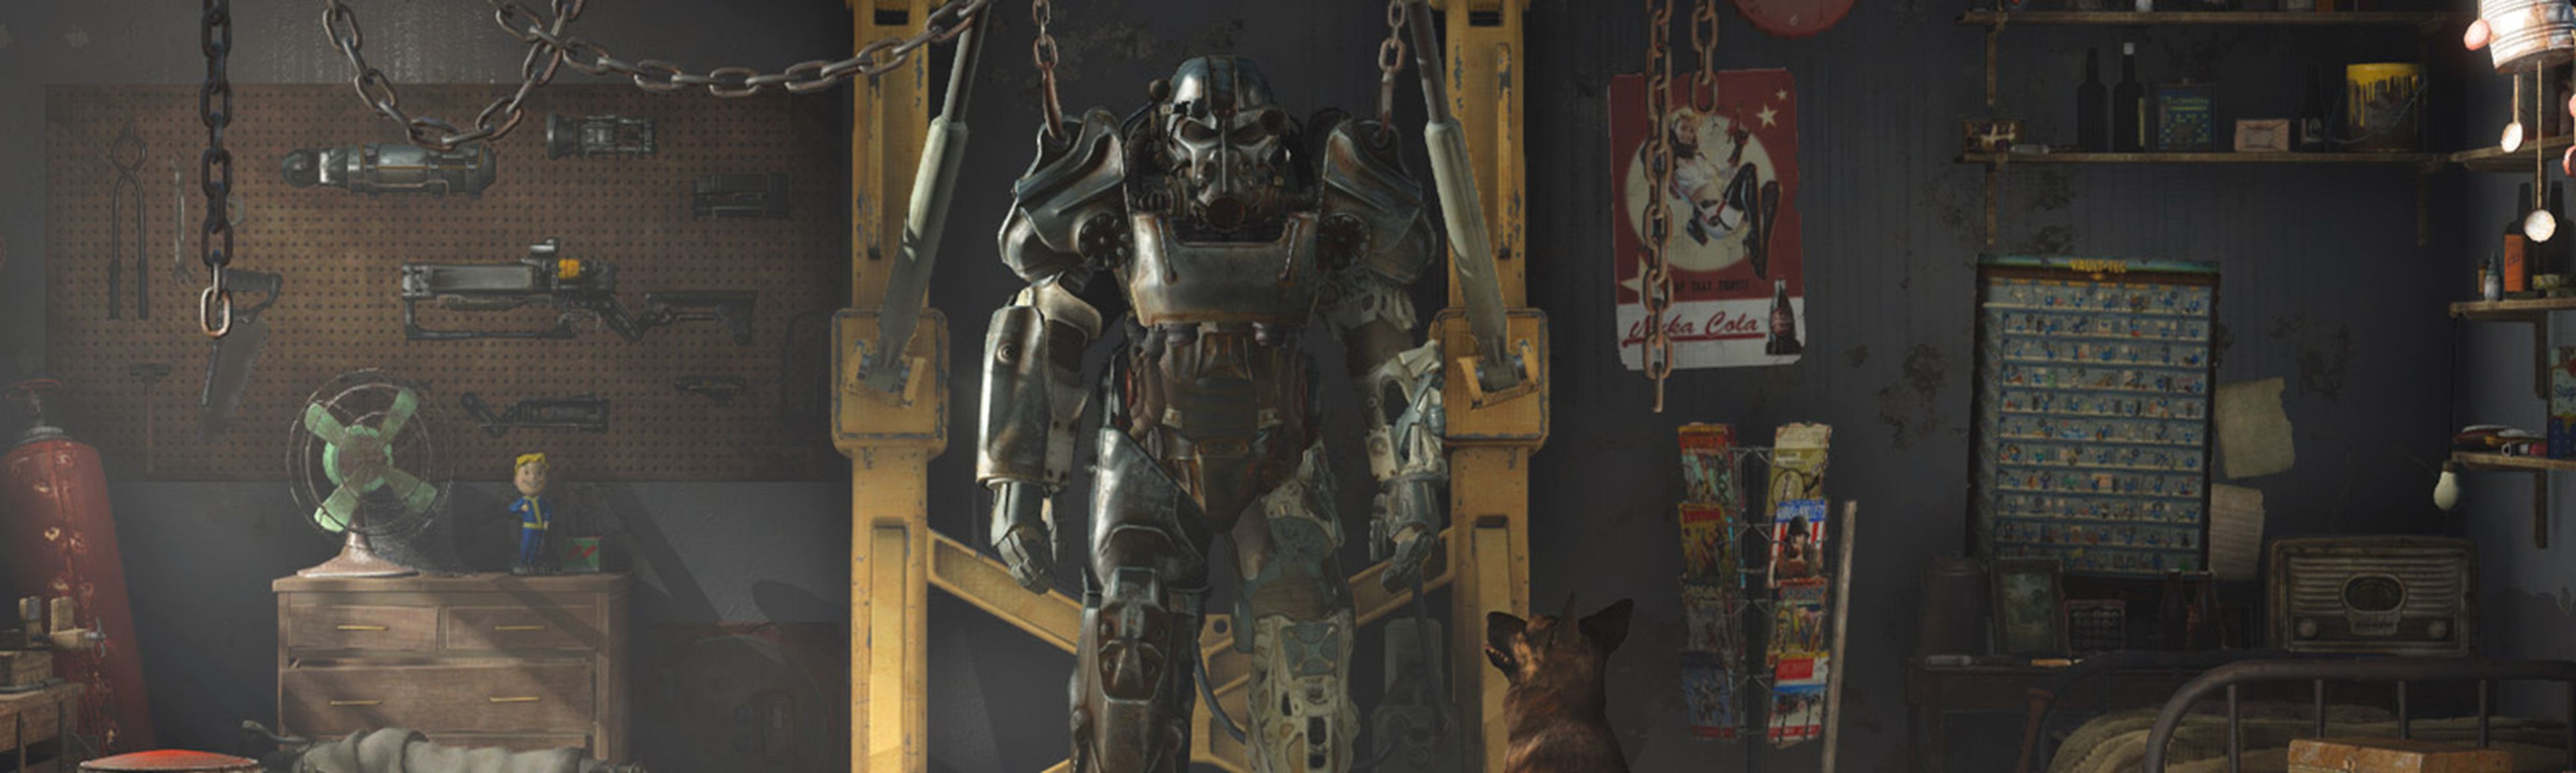 Fallout 4 - ventas